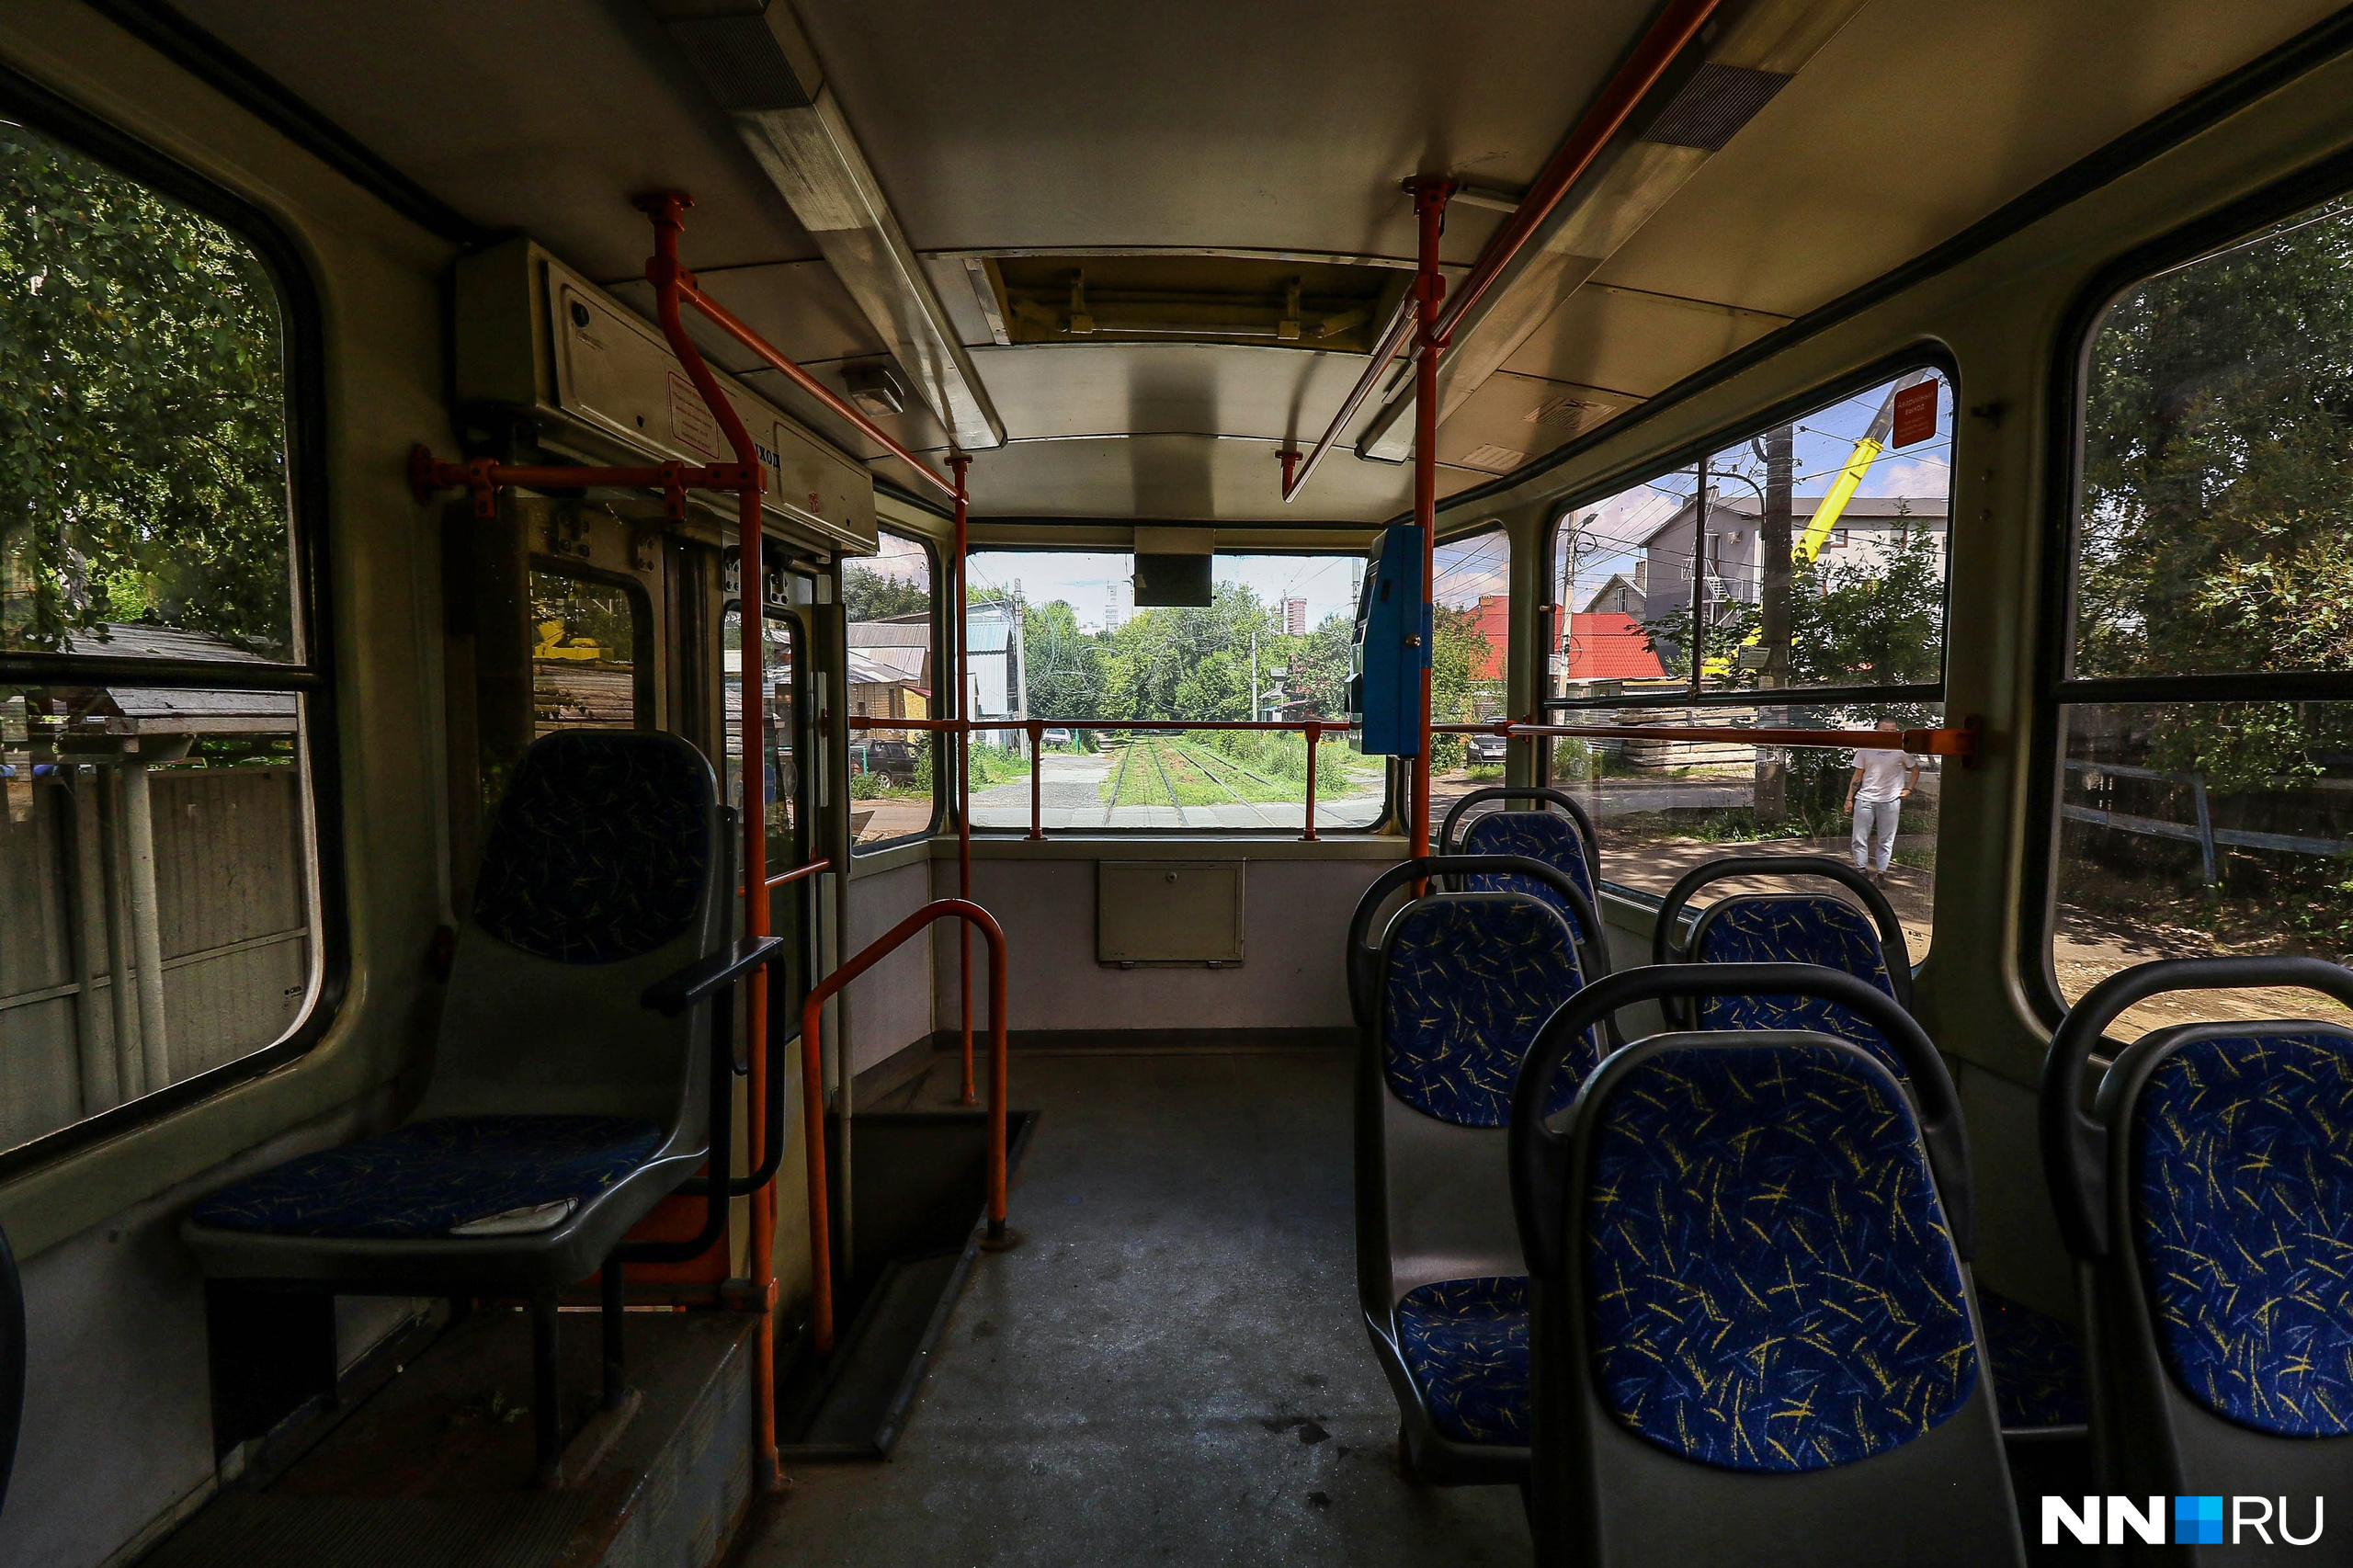 Запуск трамвая № 5 в Нижнем Новгороде отложили из-за трагедии в Кемерове — там столкнулись два вагона